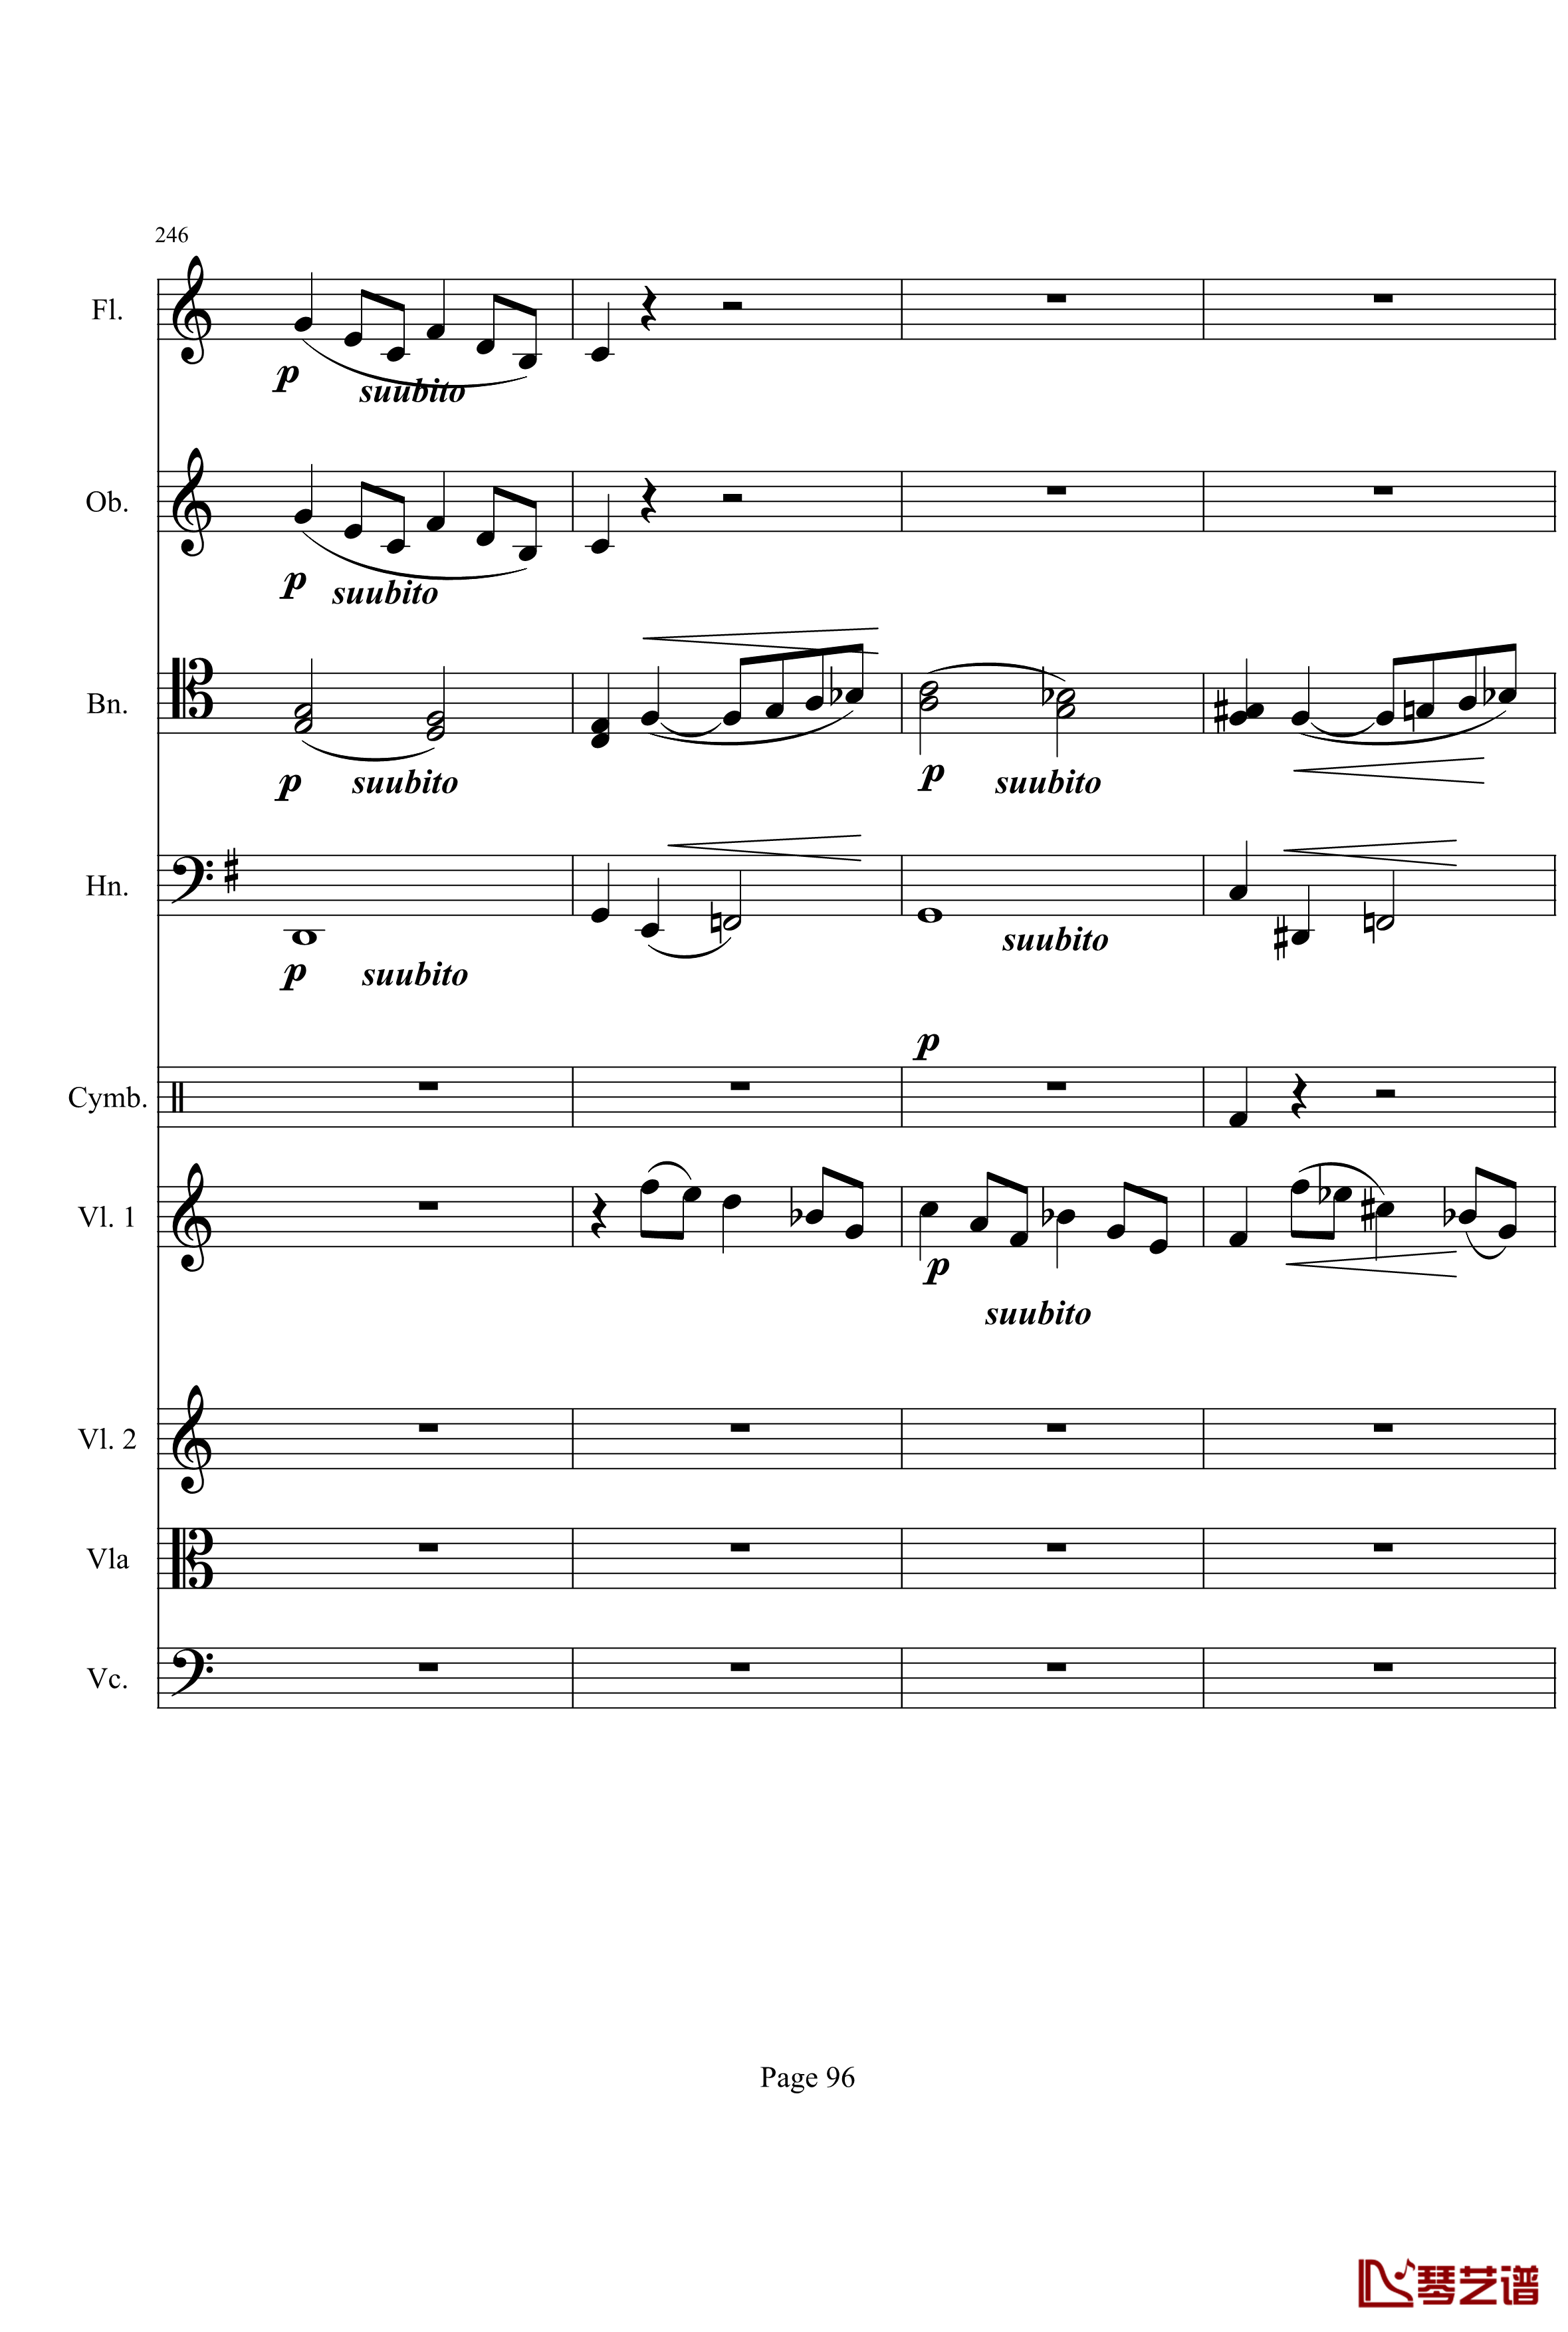 奏鸣曲之交响钢琴谱-第21-Ⅰ-贝多芬-beethoven96